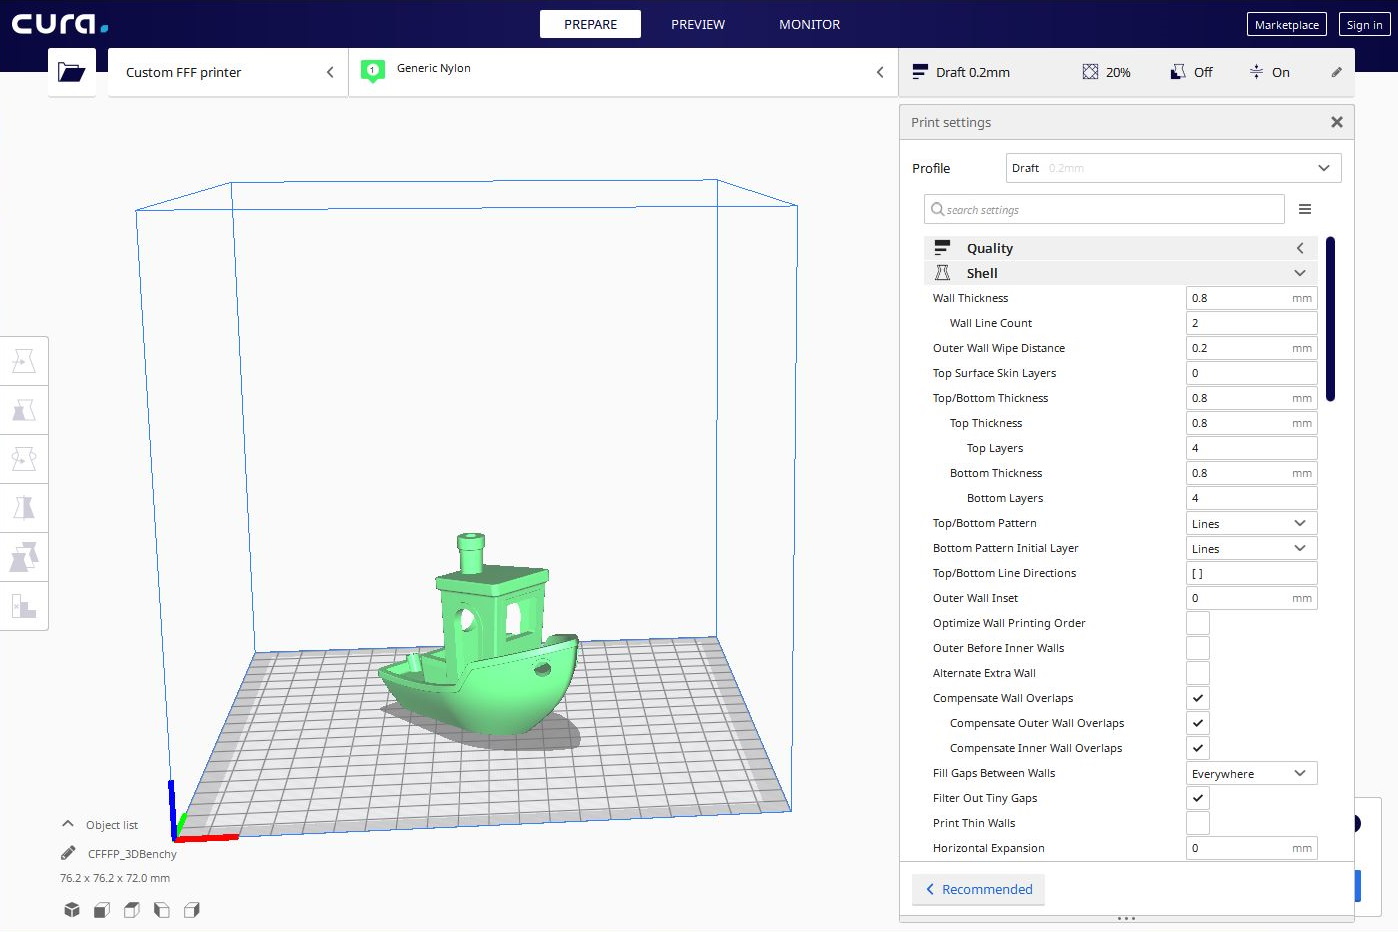 Tørke Telemacos medaljevinder How to create a 3D printing profile